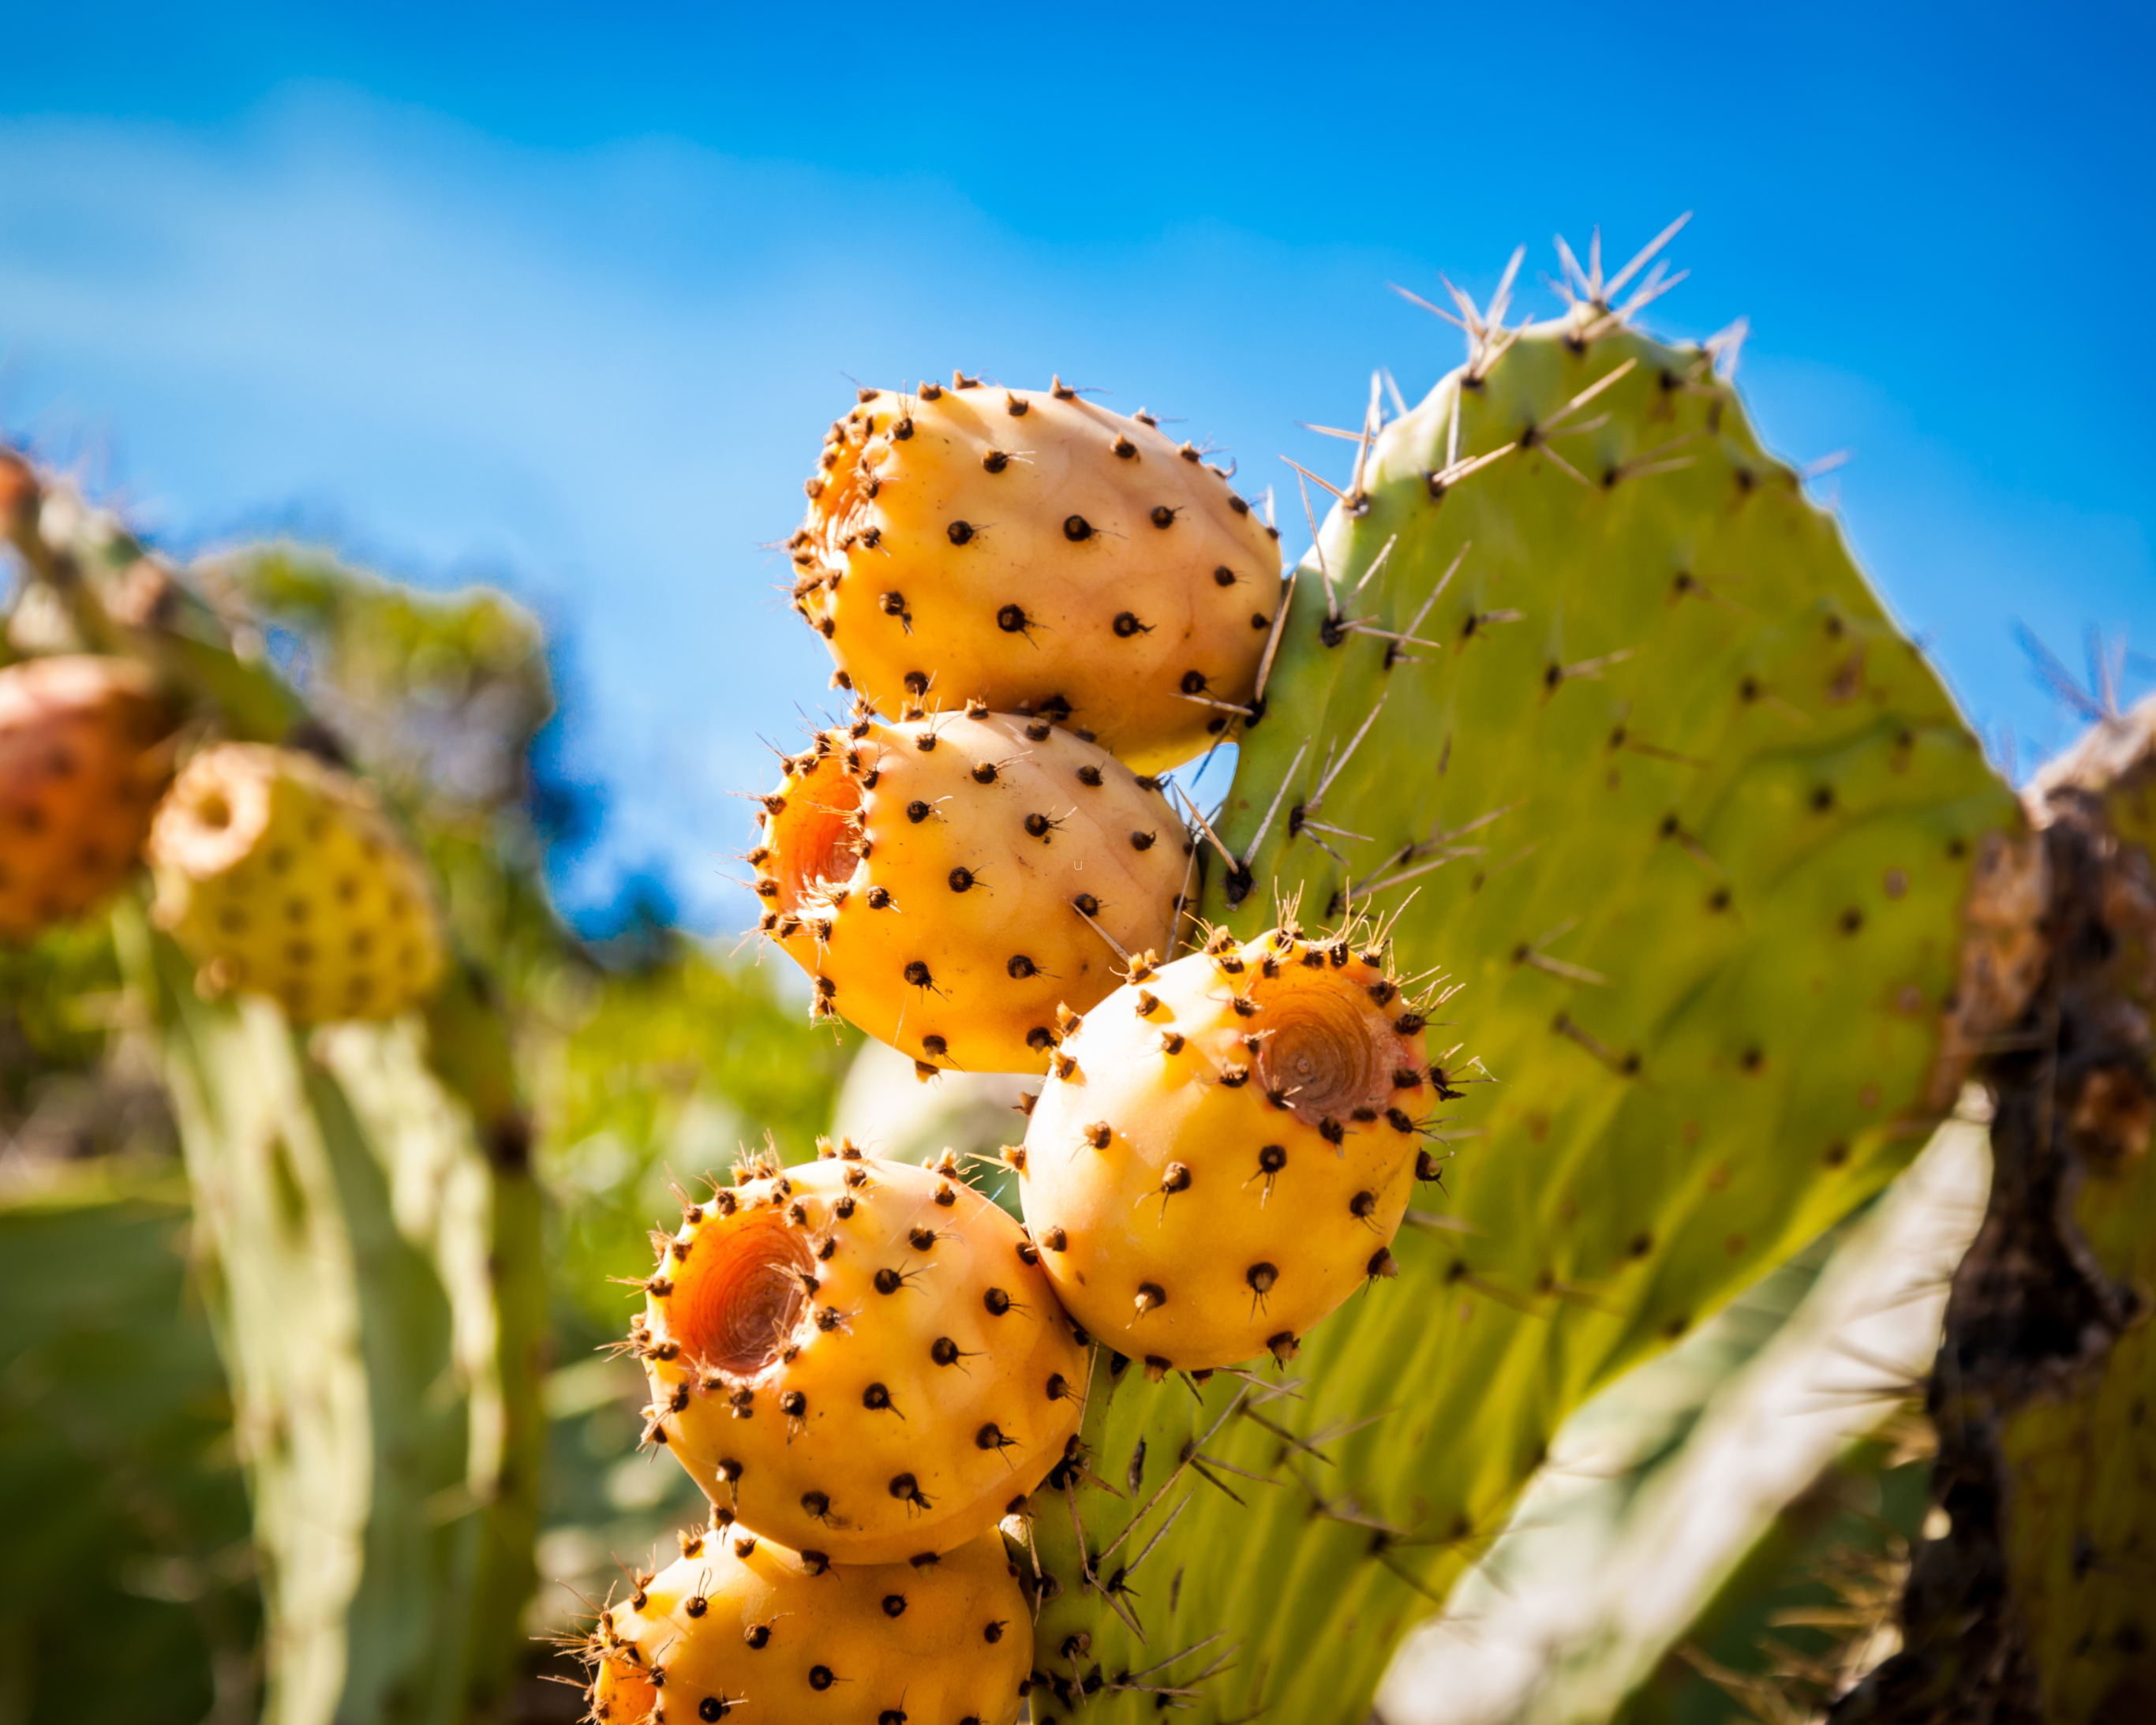 Ingrediënt van de week: cactusvijgzaadolie